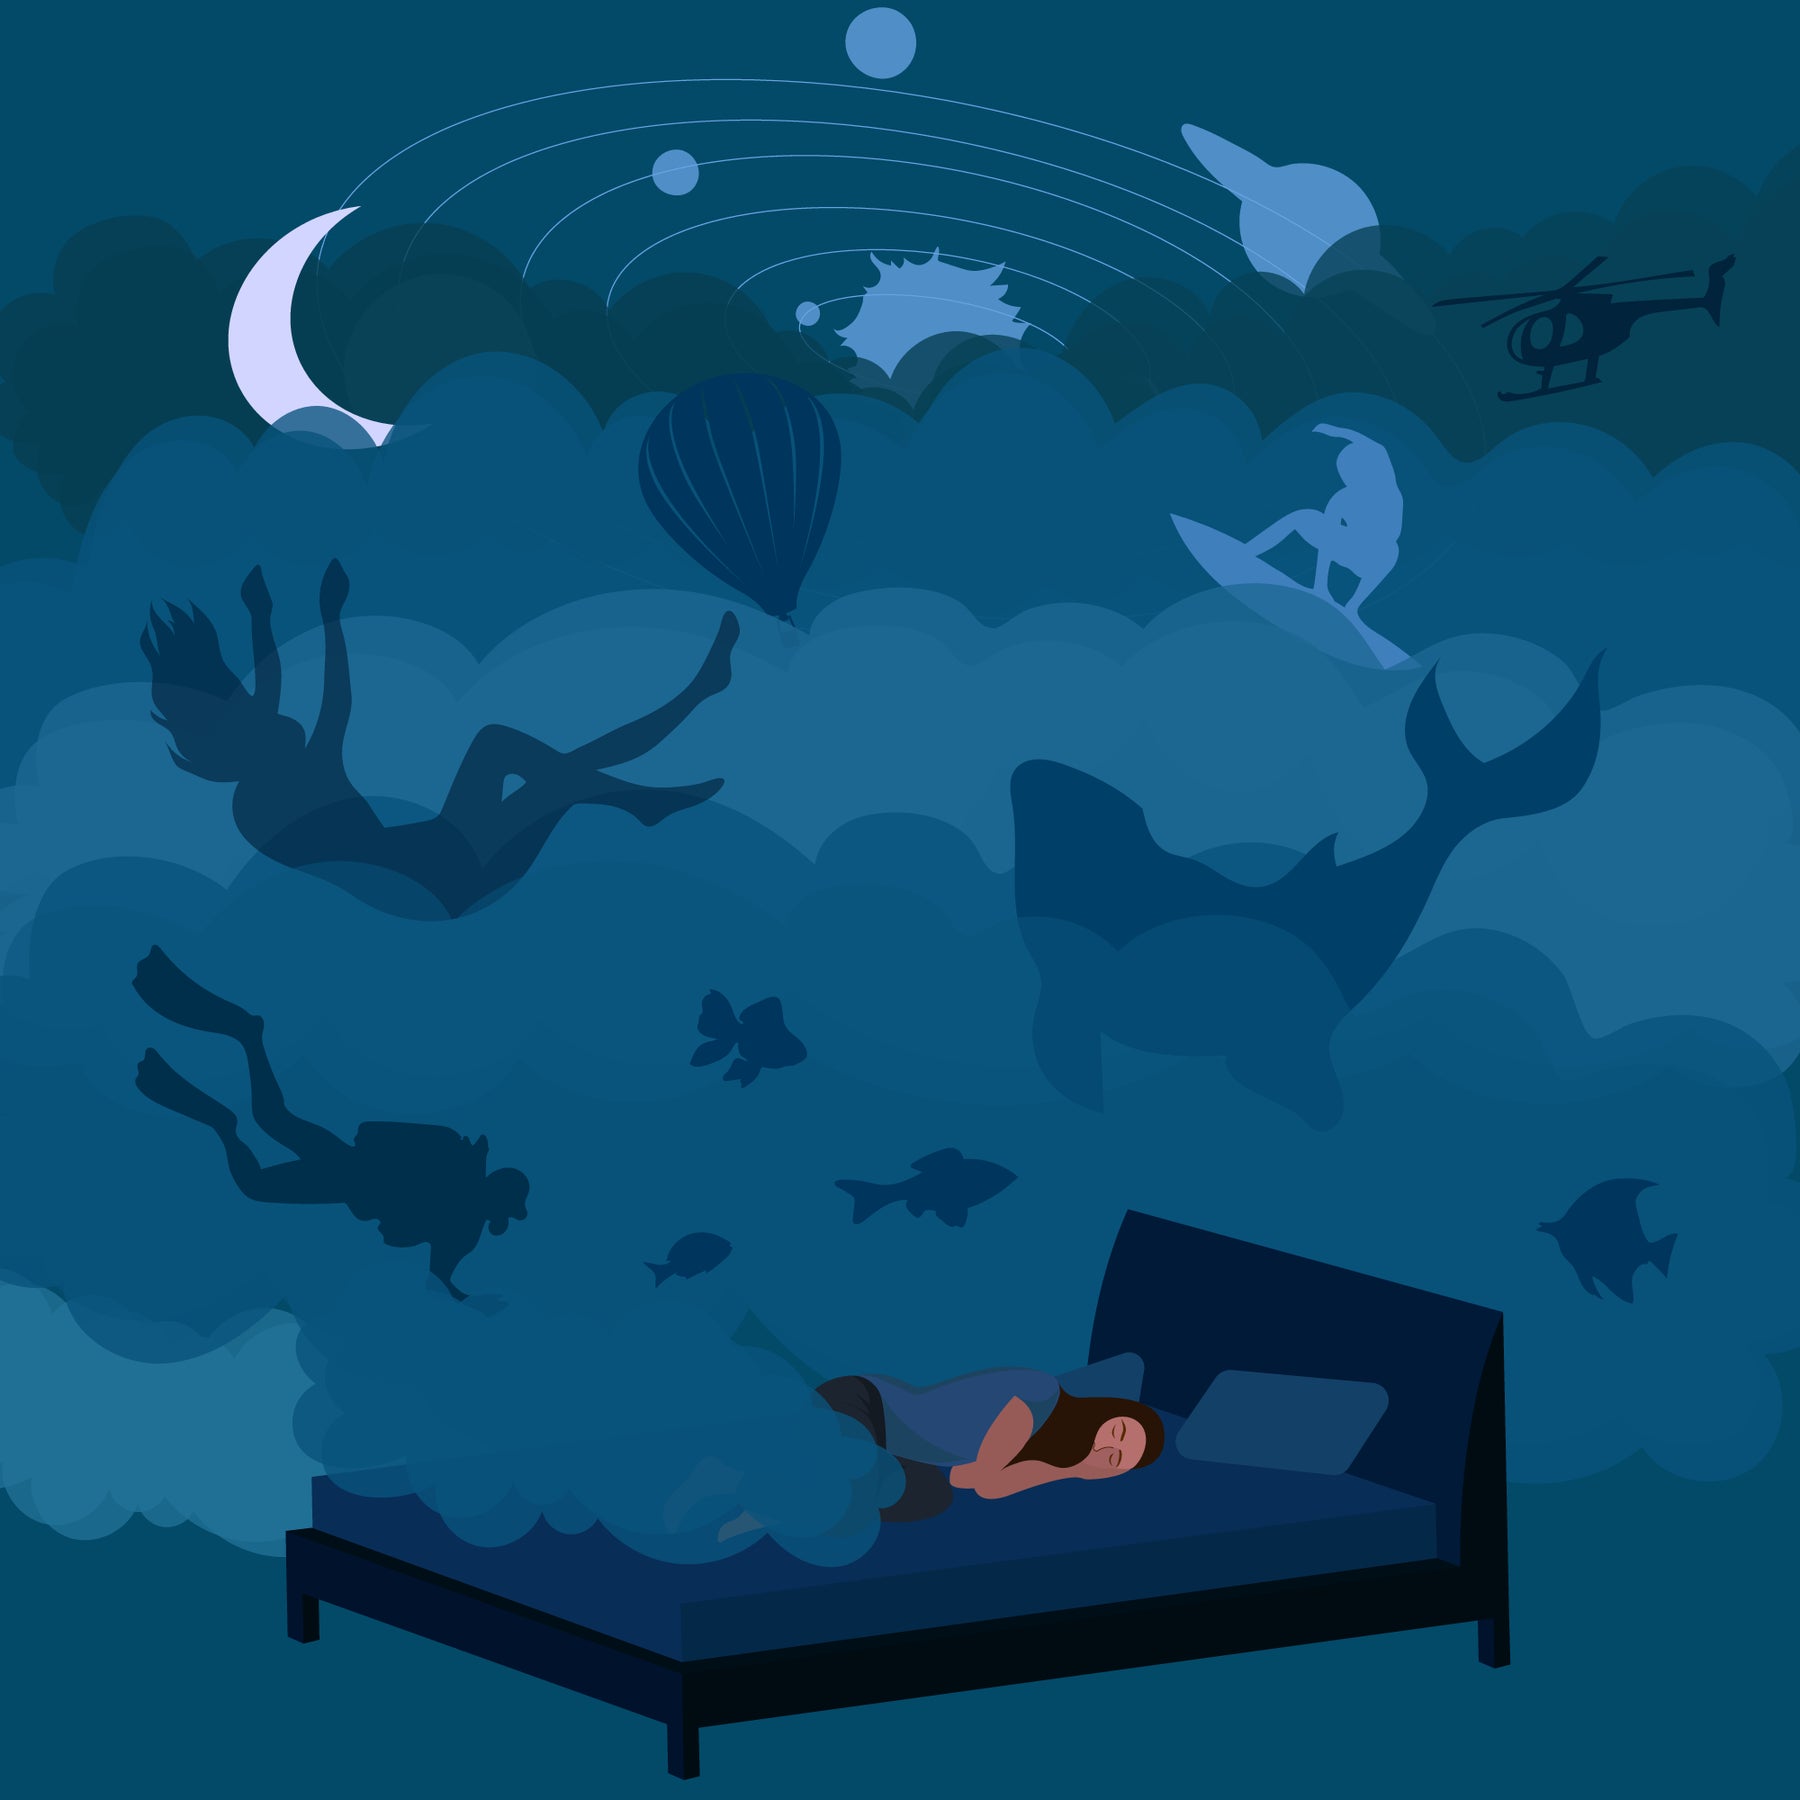 SLEEP 101: The Basics of Sleep